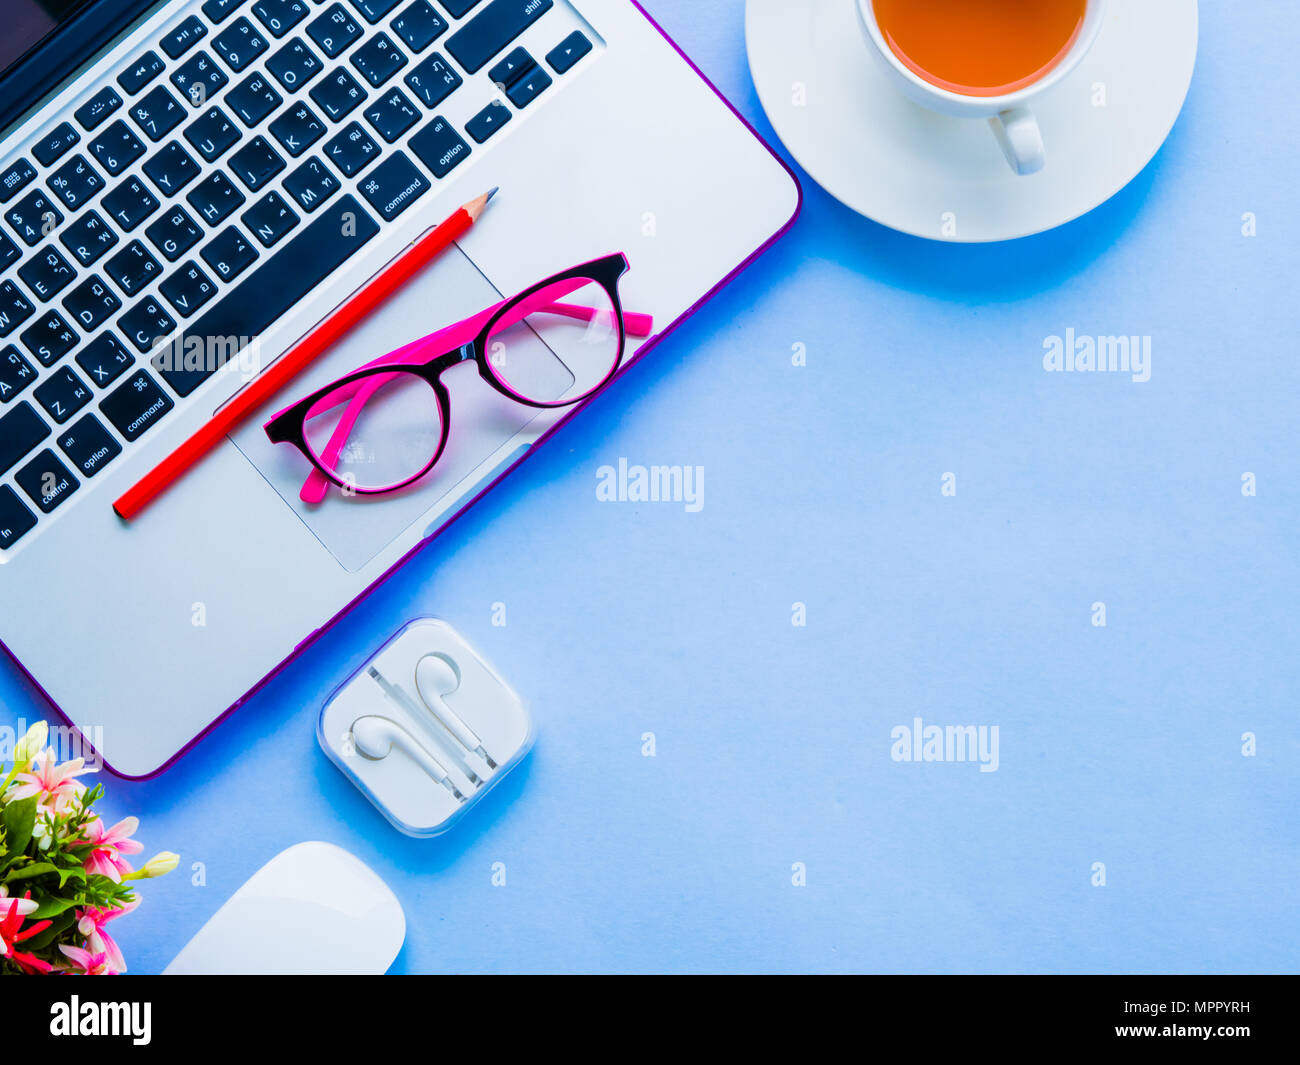 Espace de bureau féminin avec accessoires de bureau avec ordinateur portable, café, crayon rouge, fleurs, souris et lunettes roses sur fond bleu. Banque D'Images